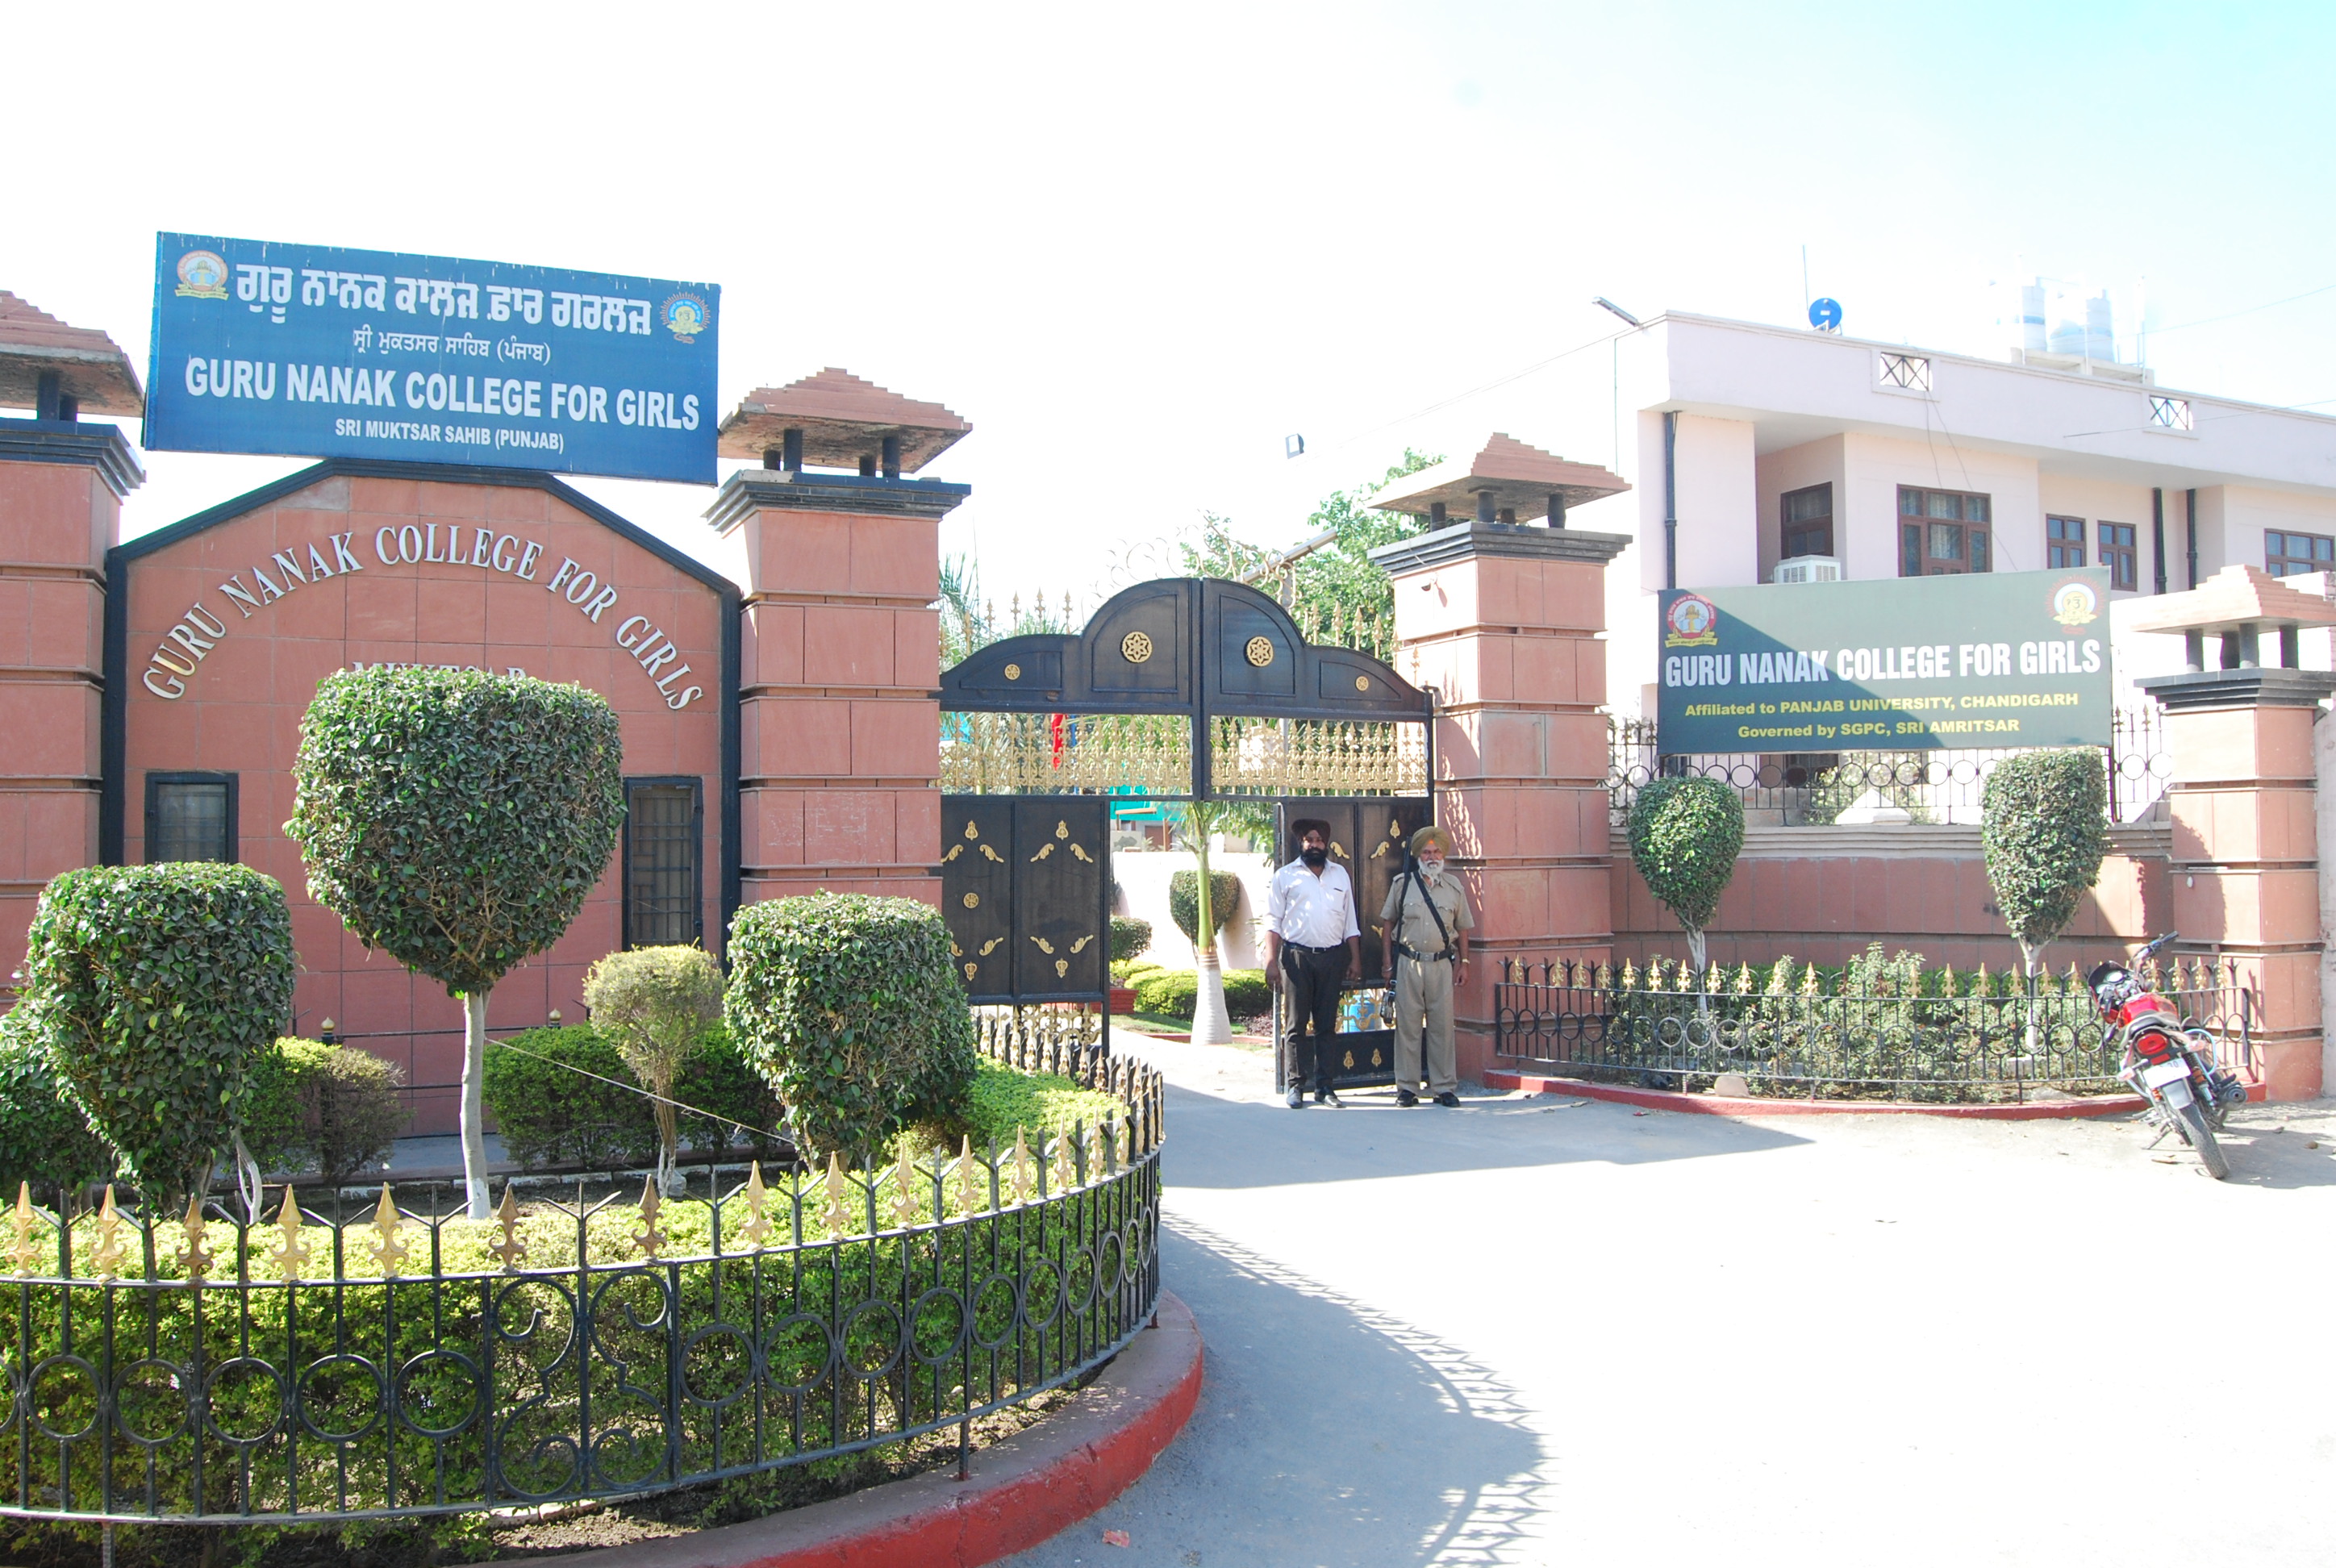 Guru Nanak College for Girls, Sri Muktsar Sahib Image